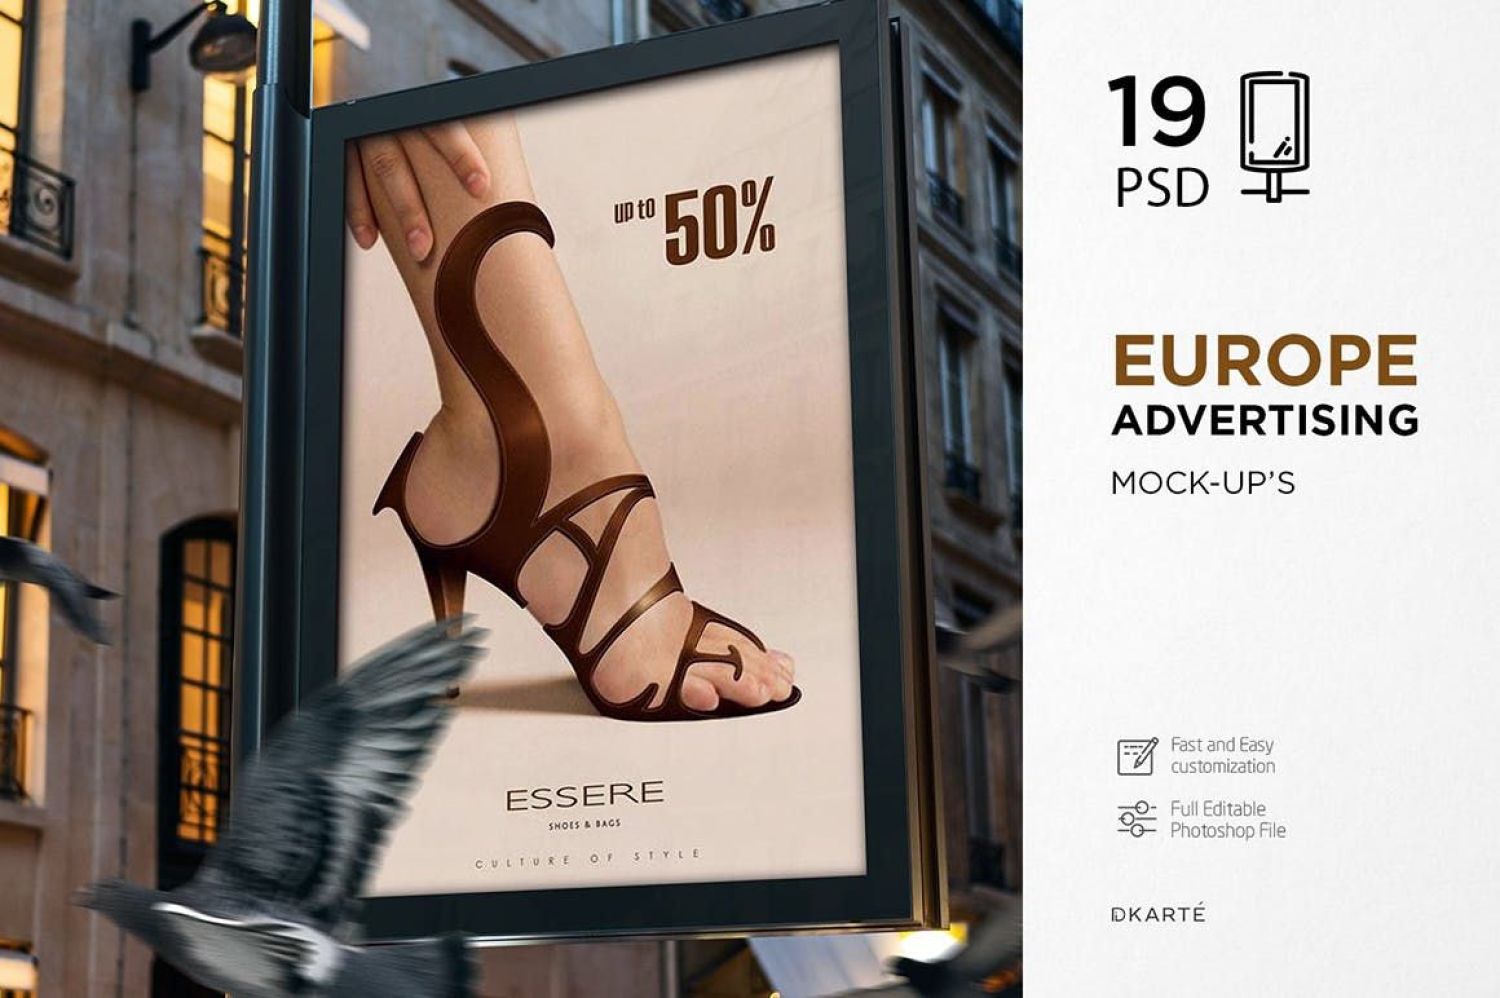 欧洲广告样机 Europe Advertising Mock-Up’s插图